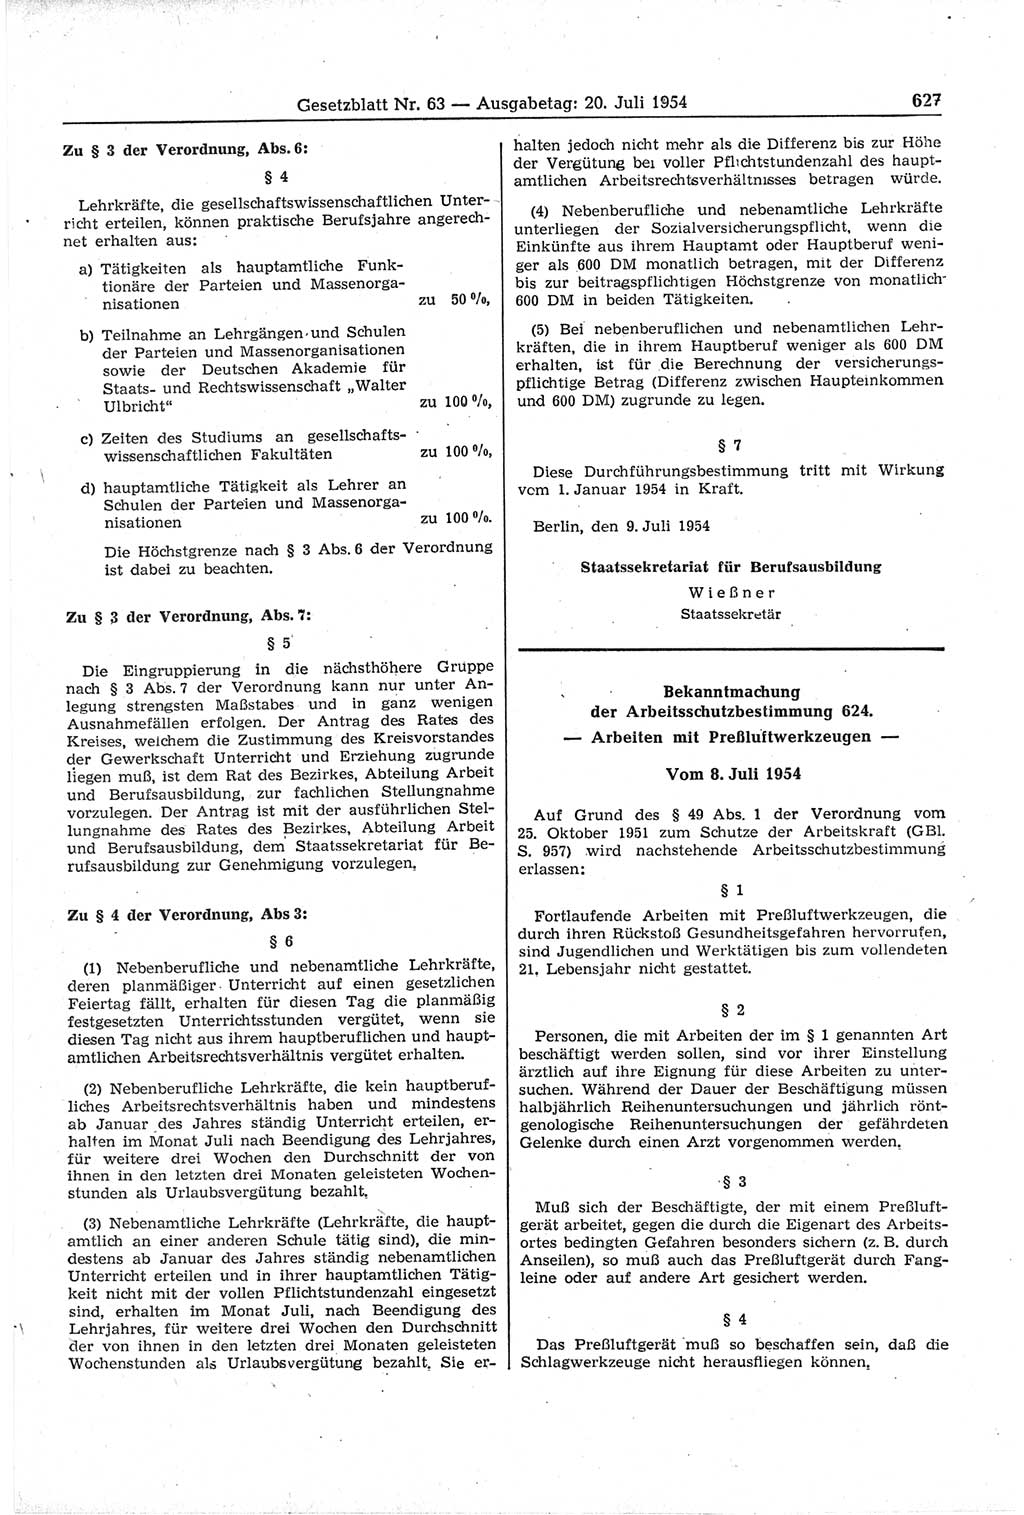 Gesetzblatt (GBl.) der Deutschen Demokratischen Republik (DDR) 1954, Seite 627 (GBl. DDR 1954, S. 627)